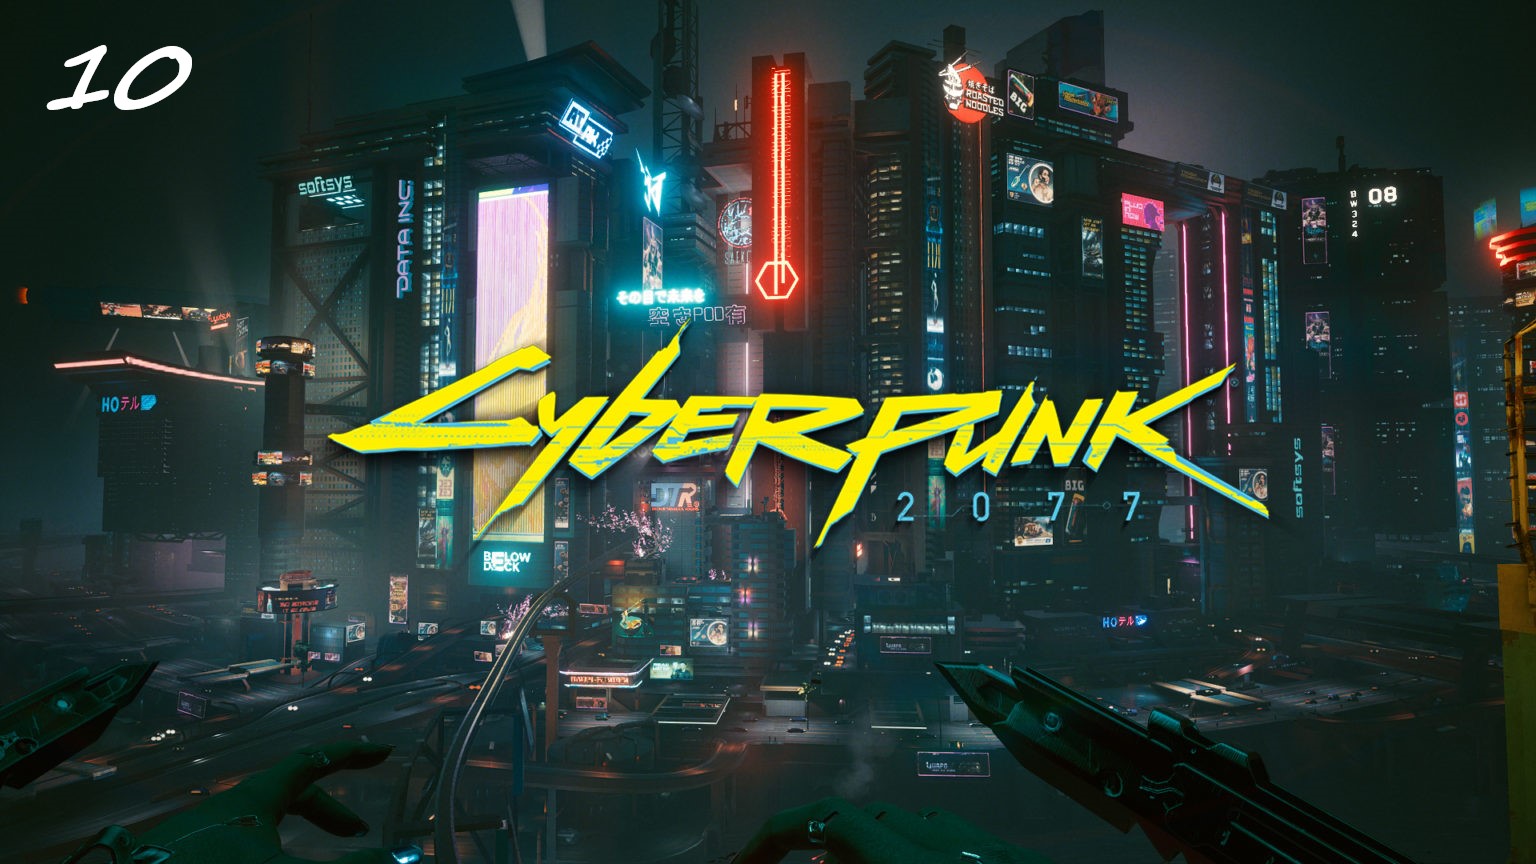 Прохождение Cyberpunk 2077 на русском - Часть десятая. Пропуск в высшую лигу